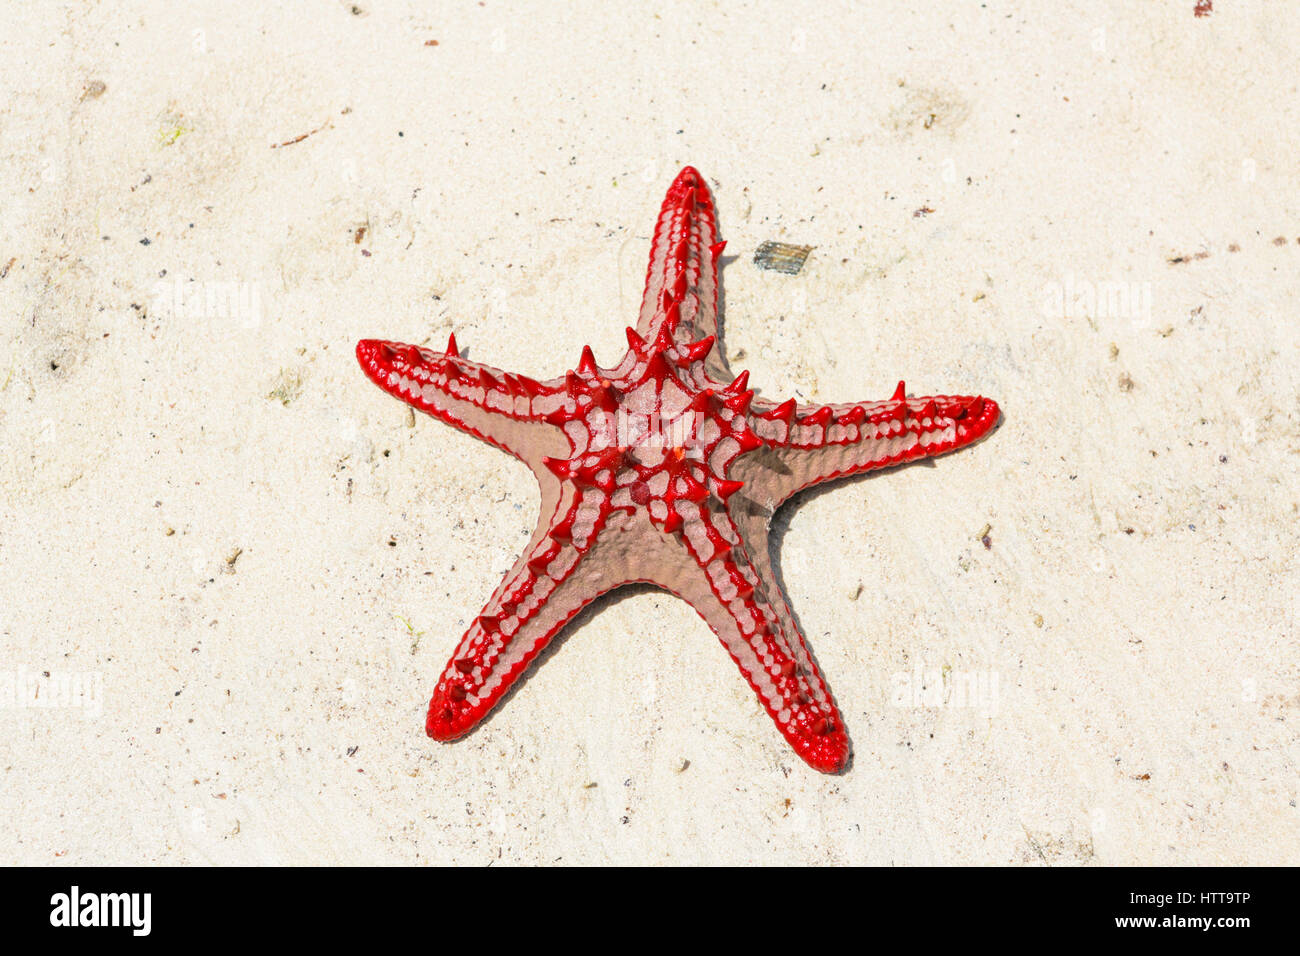 Red knobbed starfish on beach. Watamu, Kenya. Stock Photo